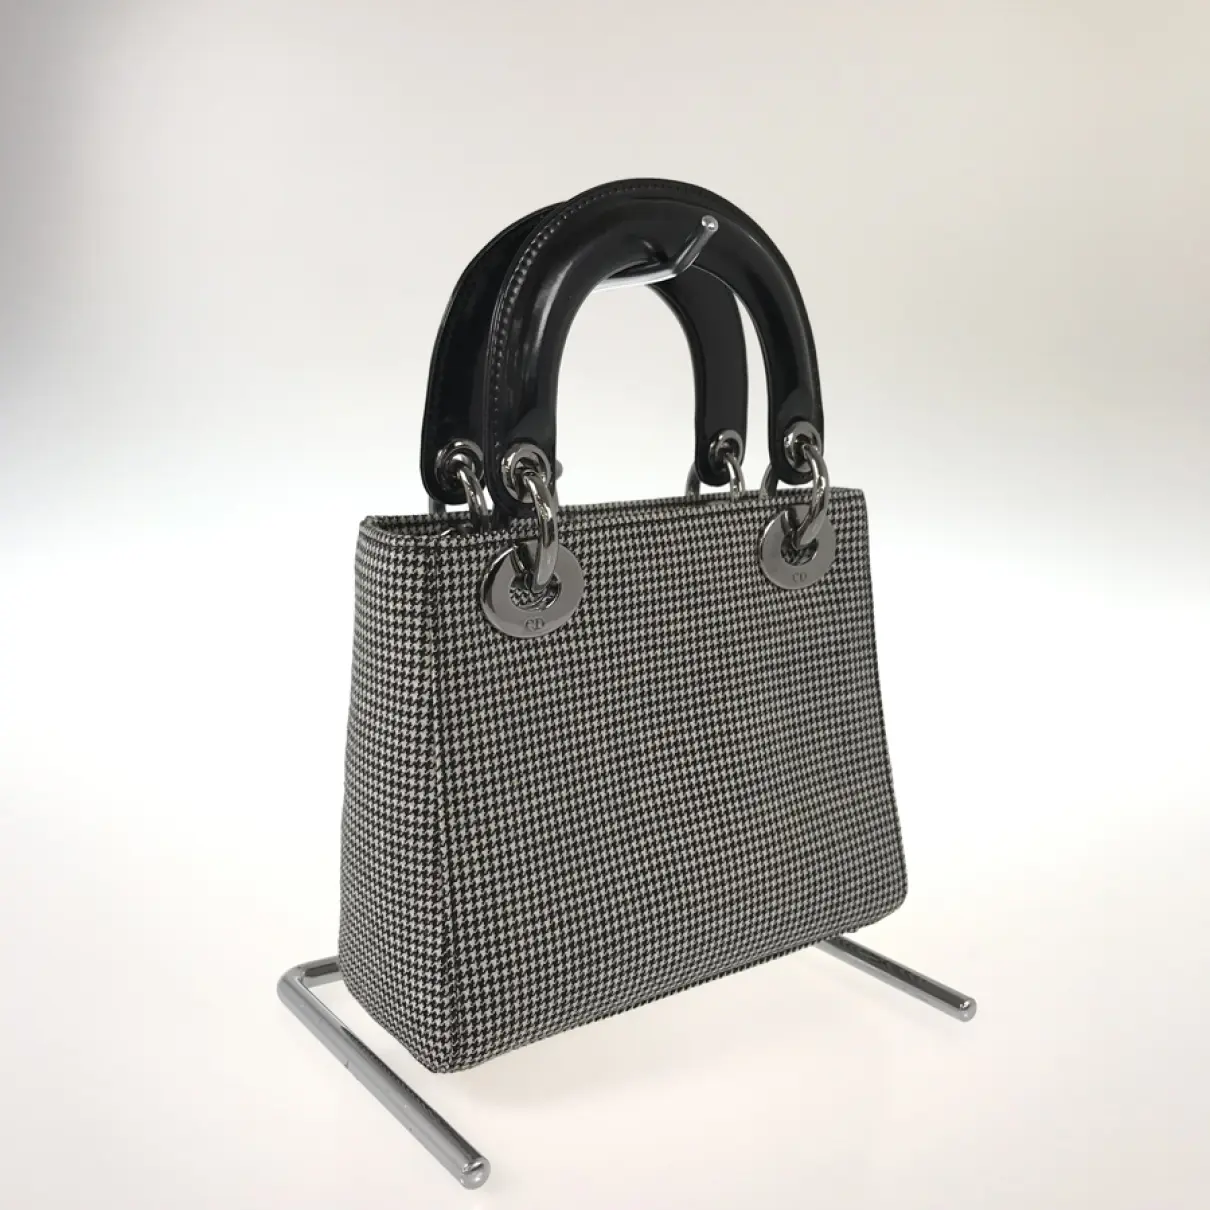 Buy Dior Lady Dior cloth handbag online - Vintage